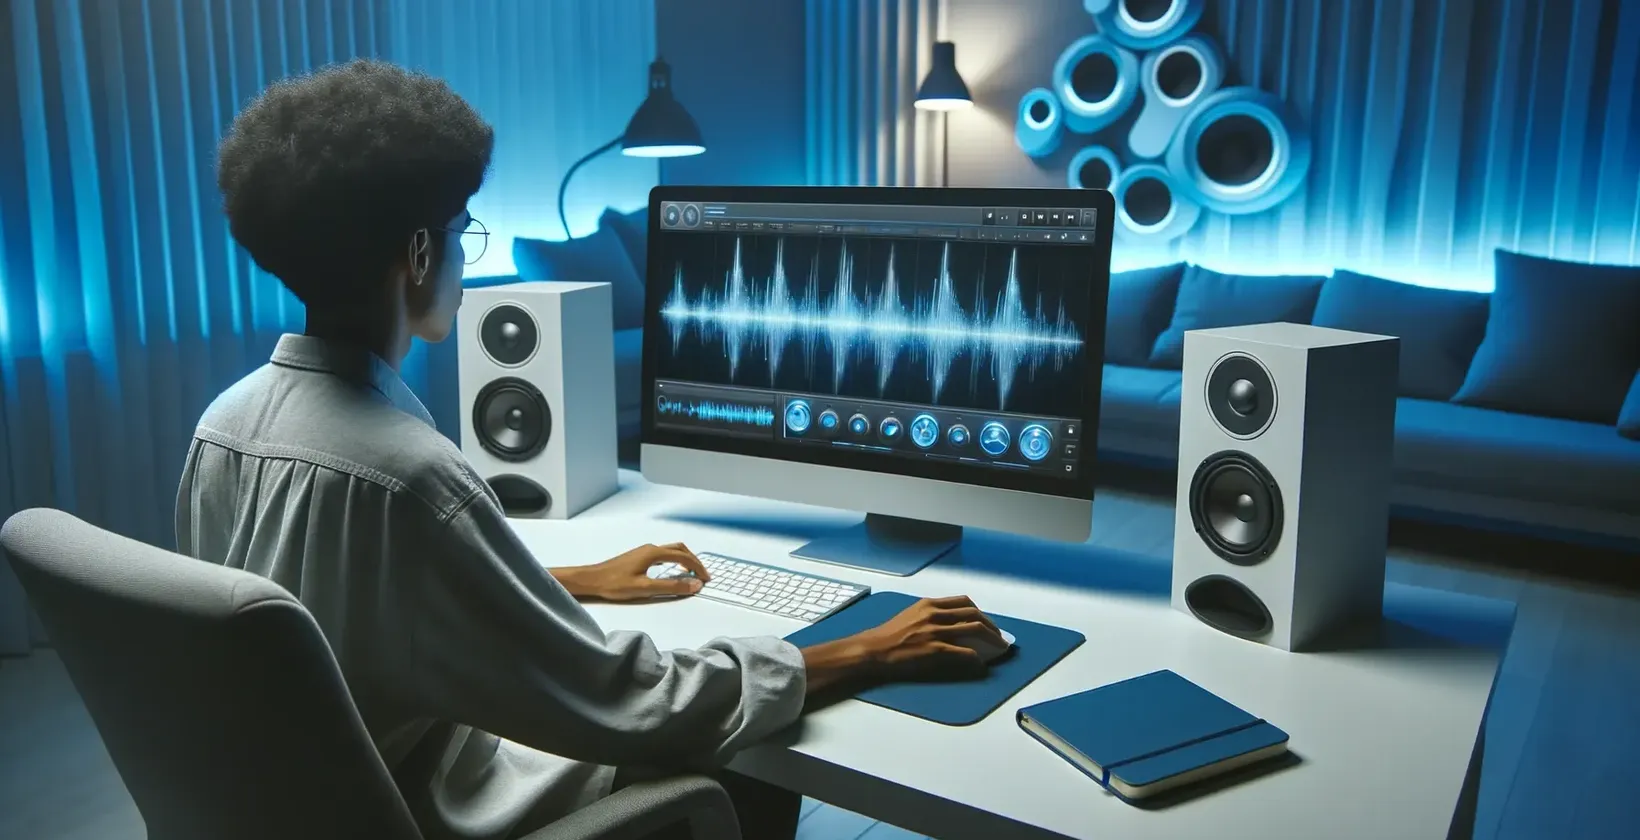 Kompiuteriu dirbantis asmuo, kuris prideda tekstą prie nufilmuoto vaizdo įrašo modernioje studijoje su garsiakalbiais